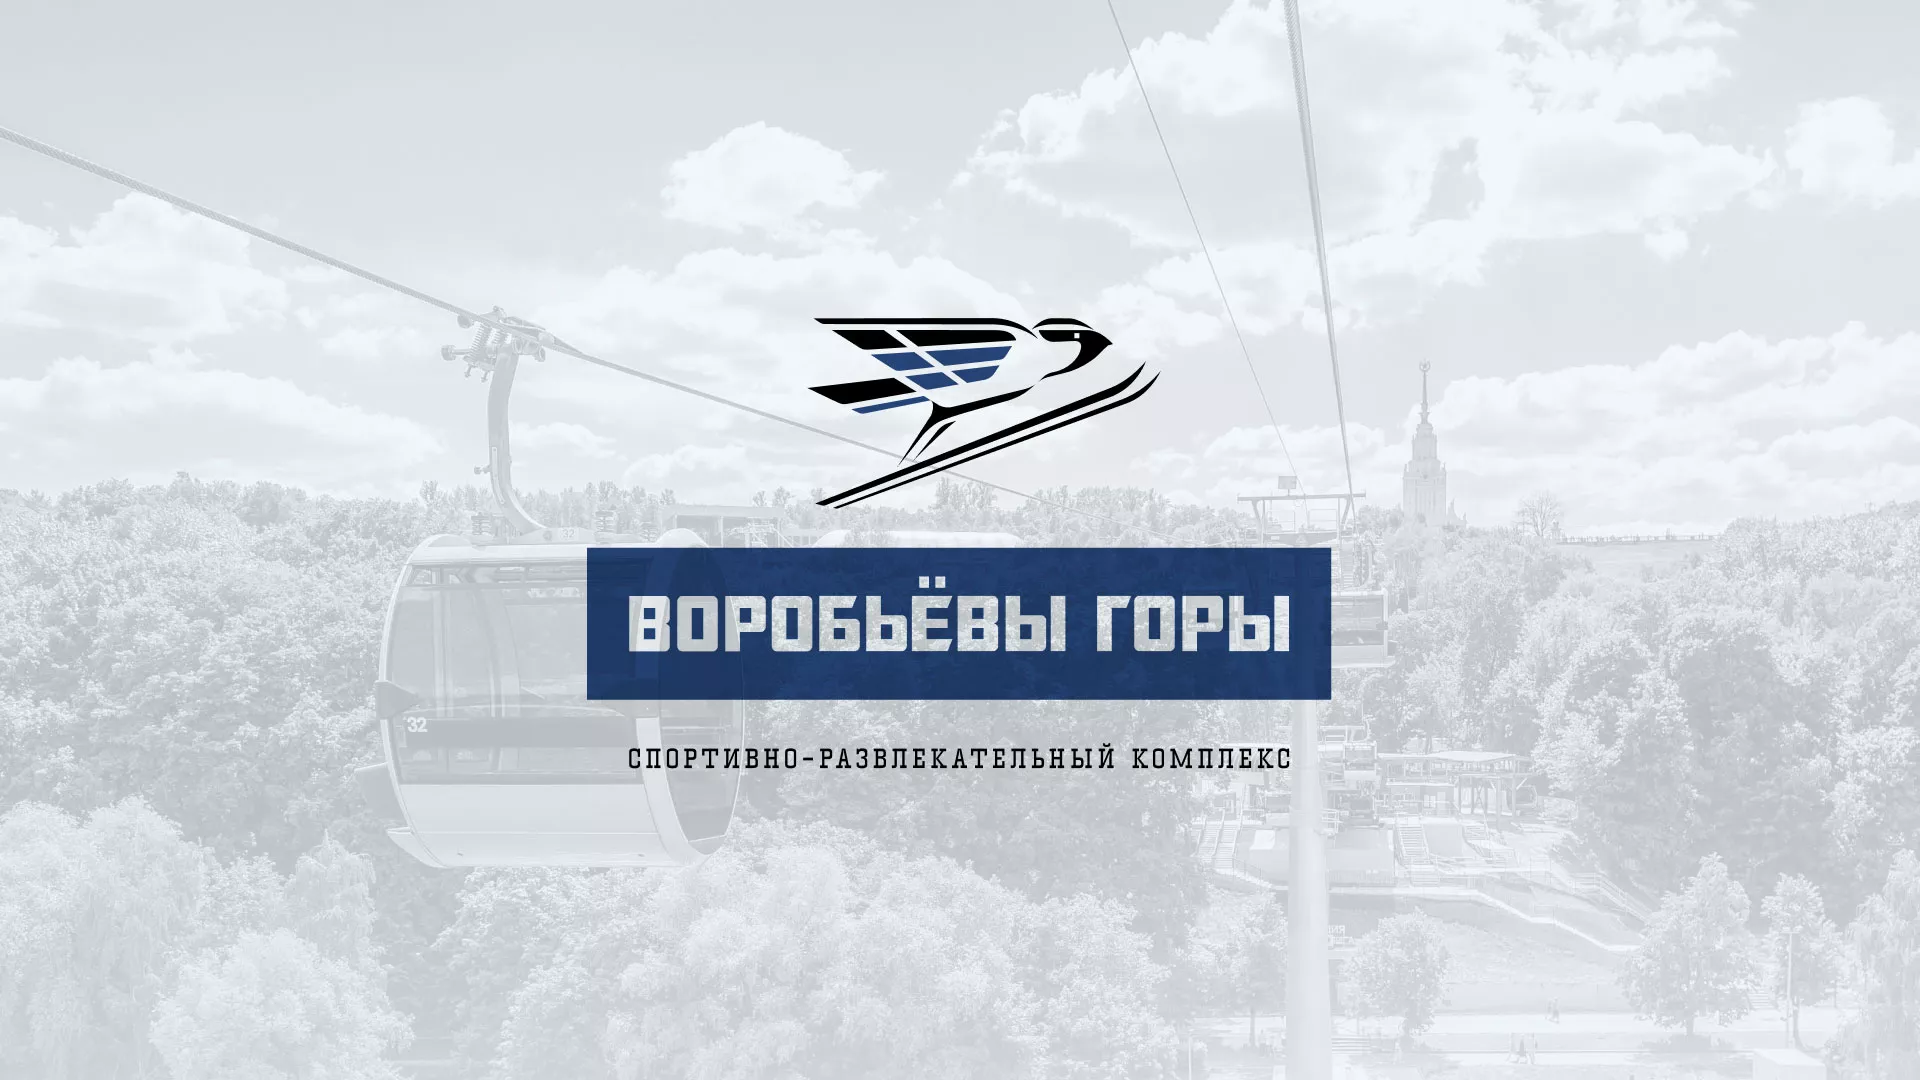 Разработка сайта в Усть-Лабинске для спортивно-развлекательного комплекса «Воробьёвы горы»